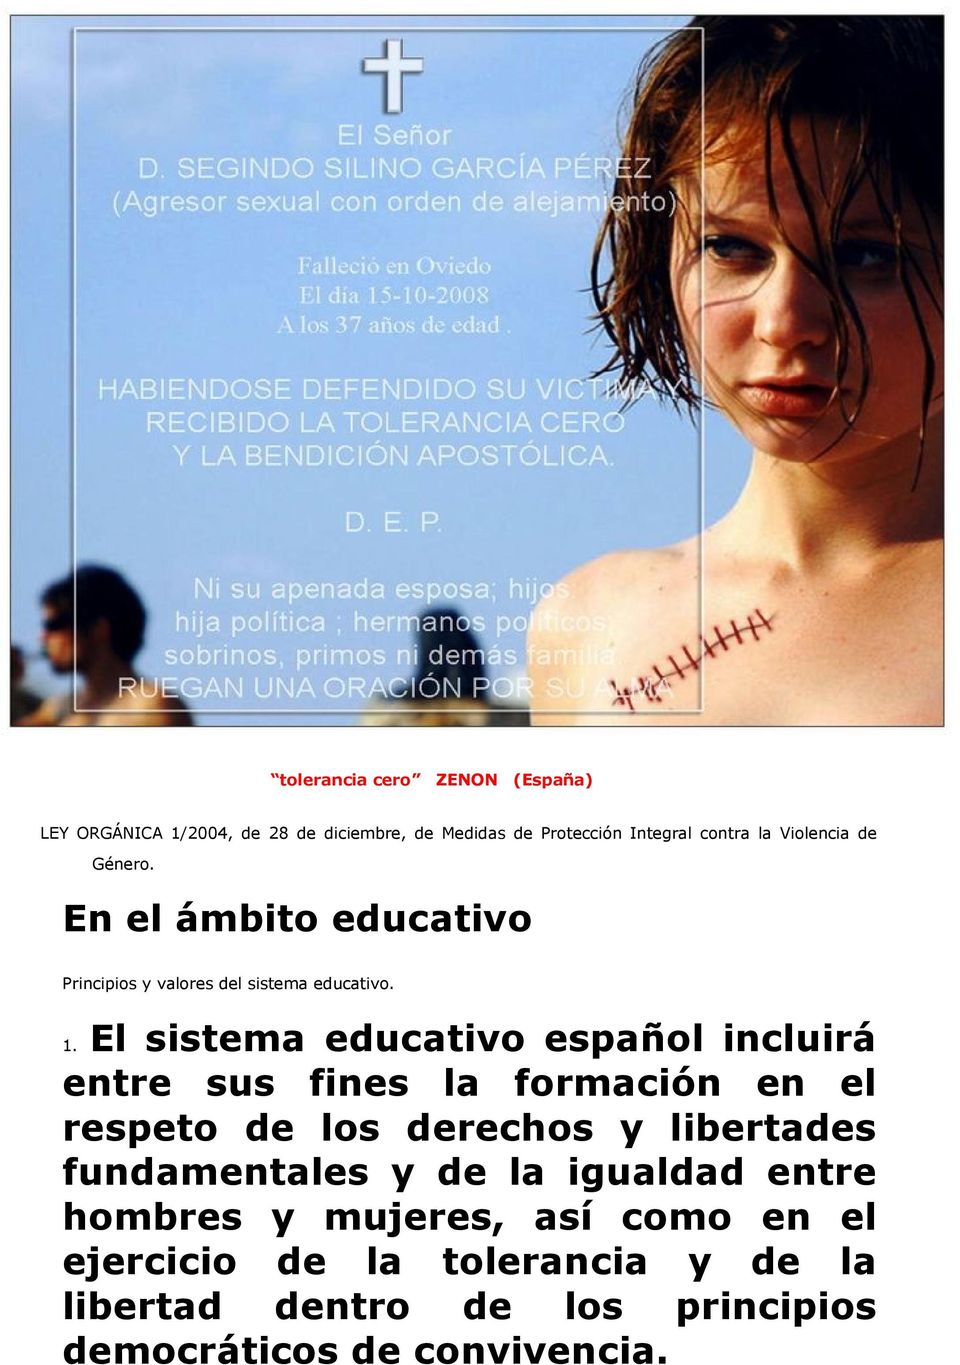 El sistema educativo español incluirá entre sus fines la formación en el respeto de los derechos y libertades